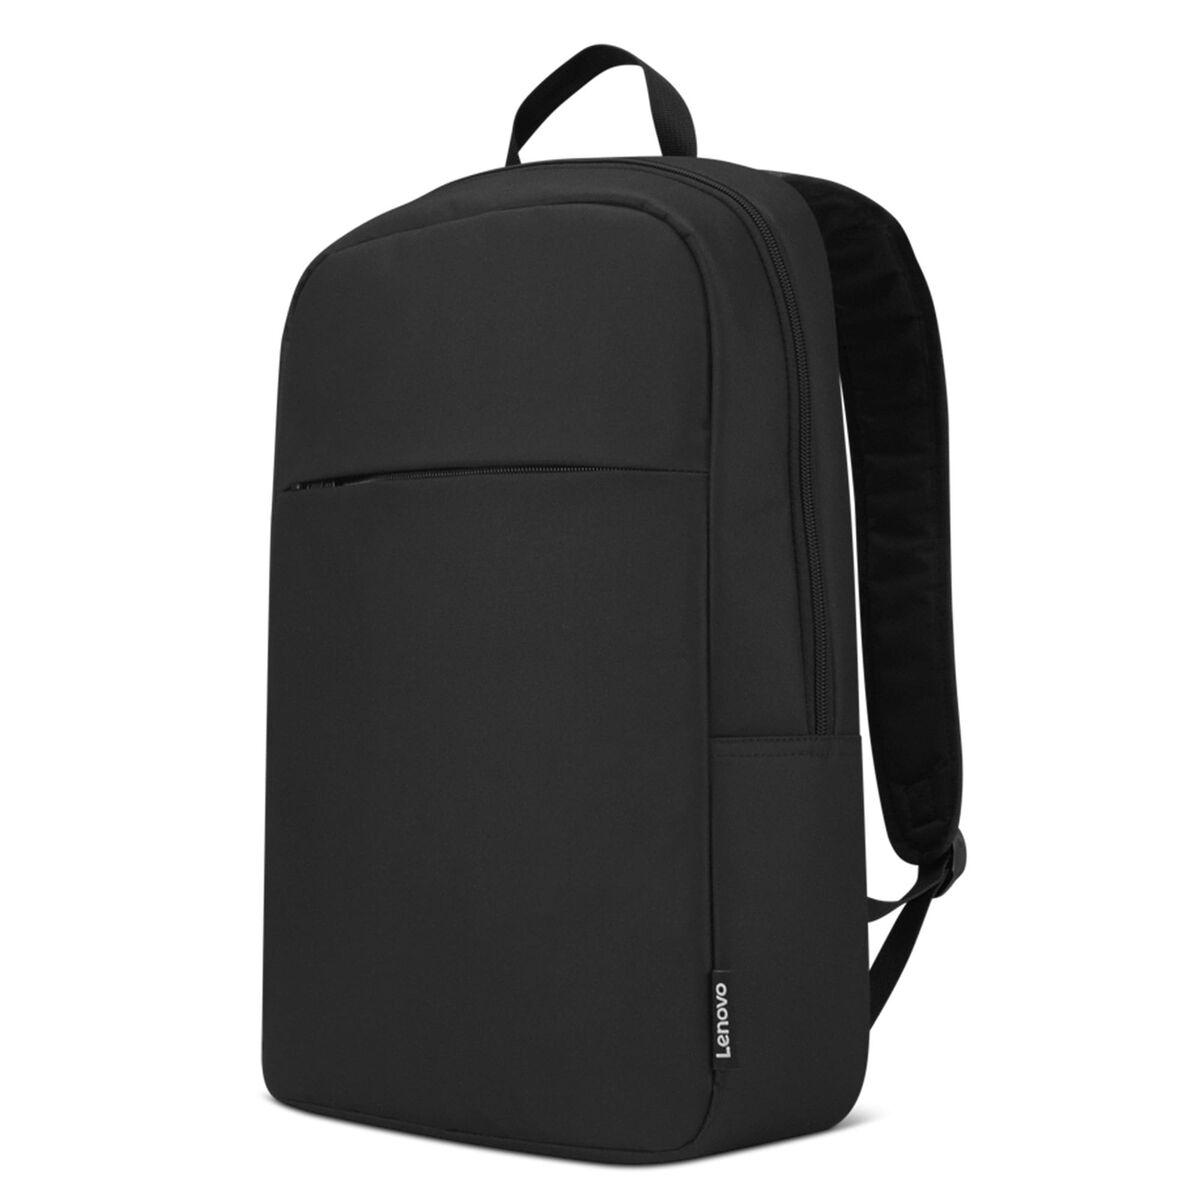 Lenovo 15.6in B215 Laptop Backpack for $11.99 Shipped